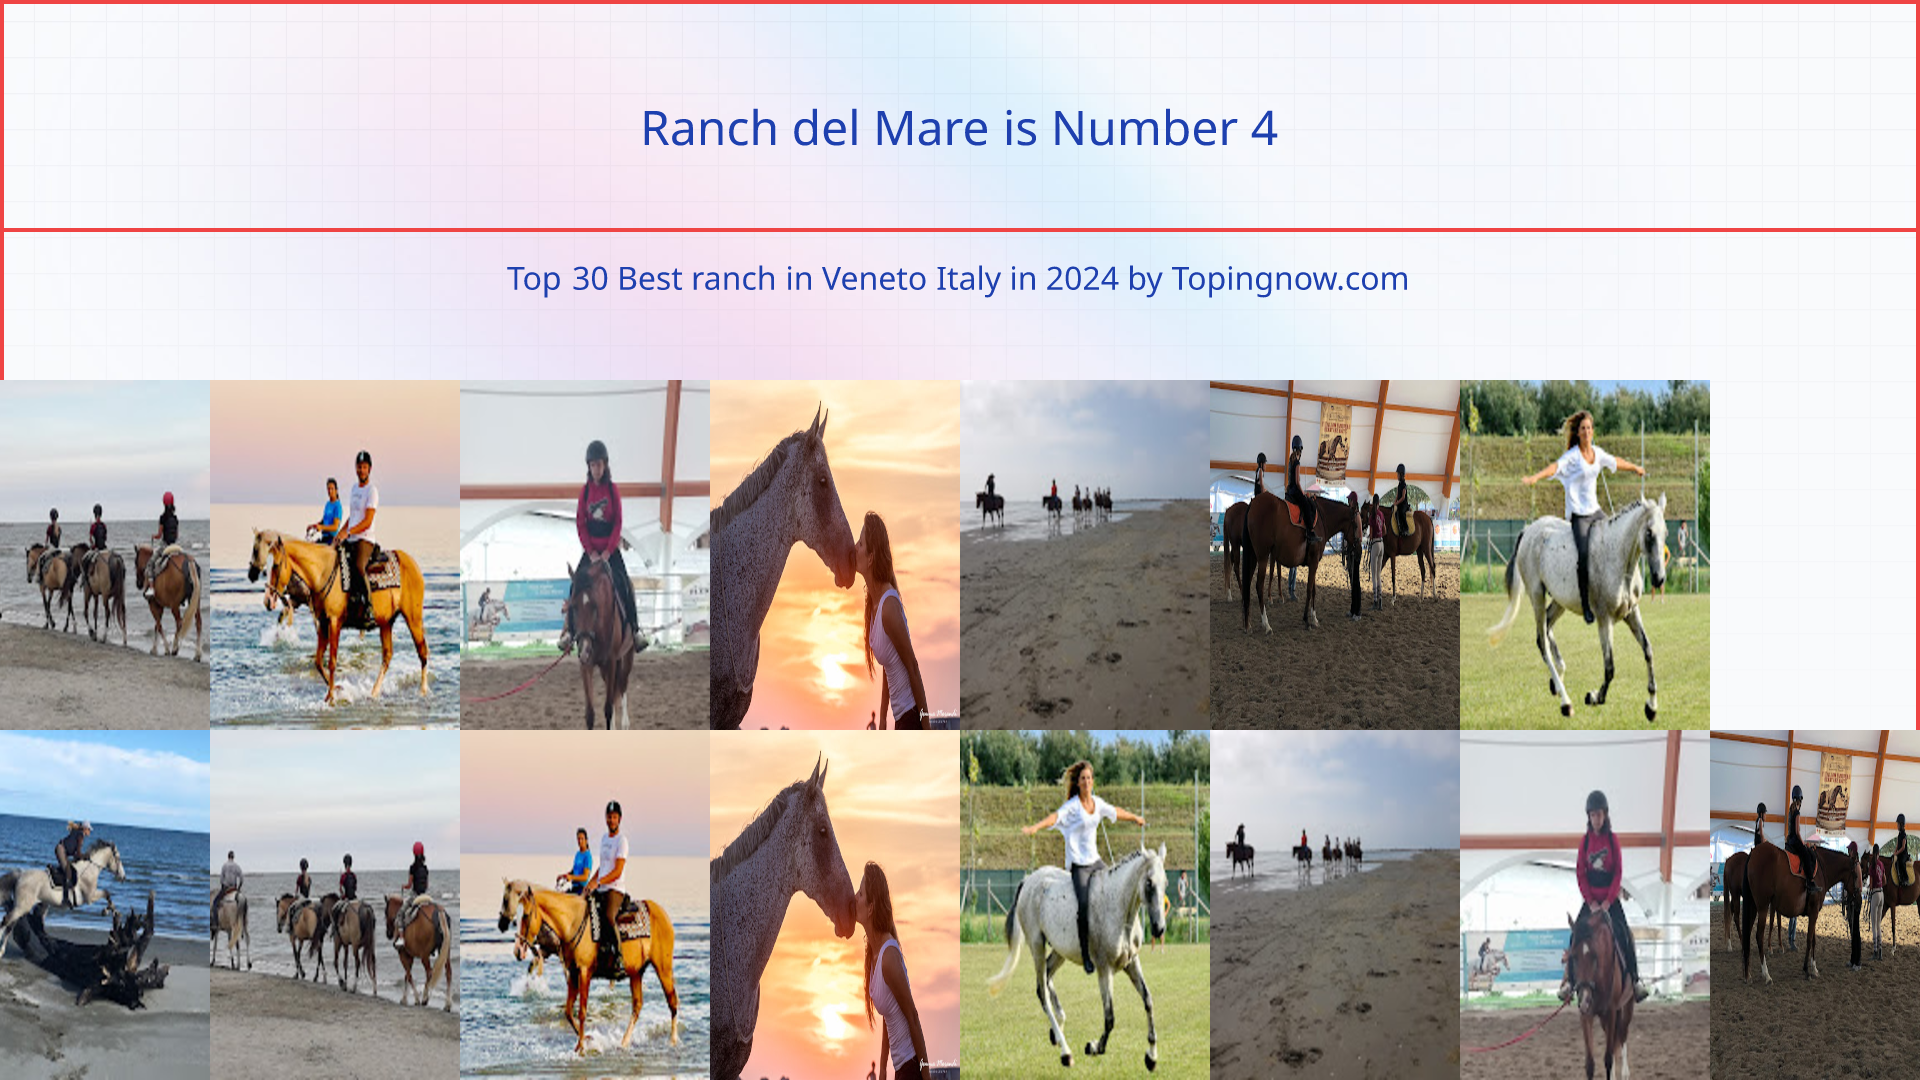 Ranch del Mare: Top 30 Best ranch in Veneto Italy in 2024